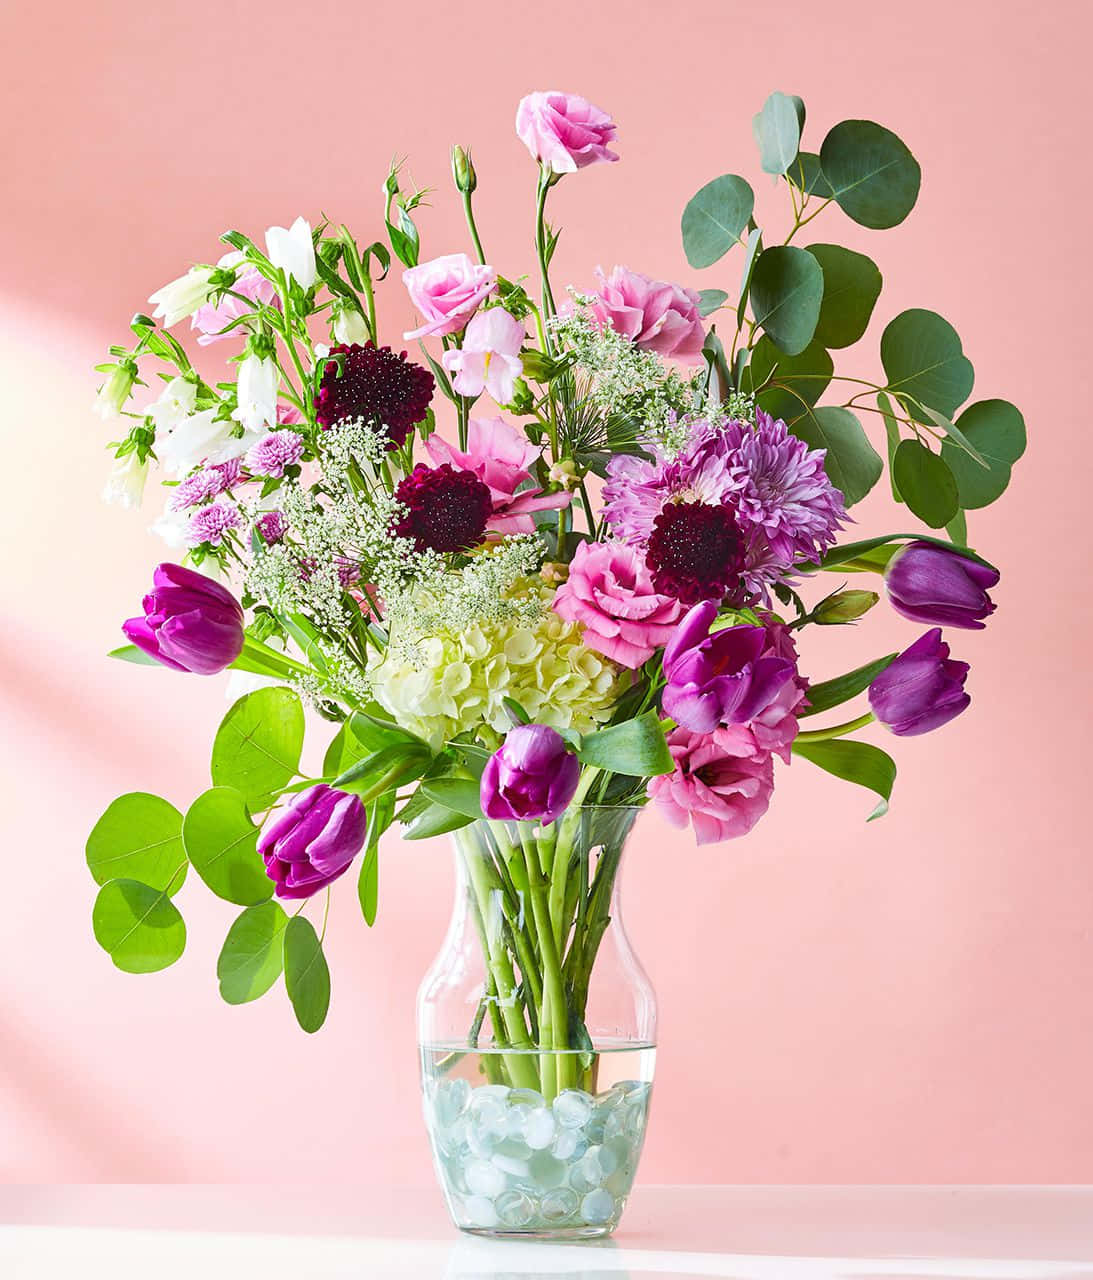 Bildeiner Violettfarbigen Blumenvase.